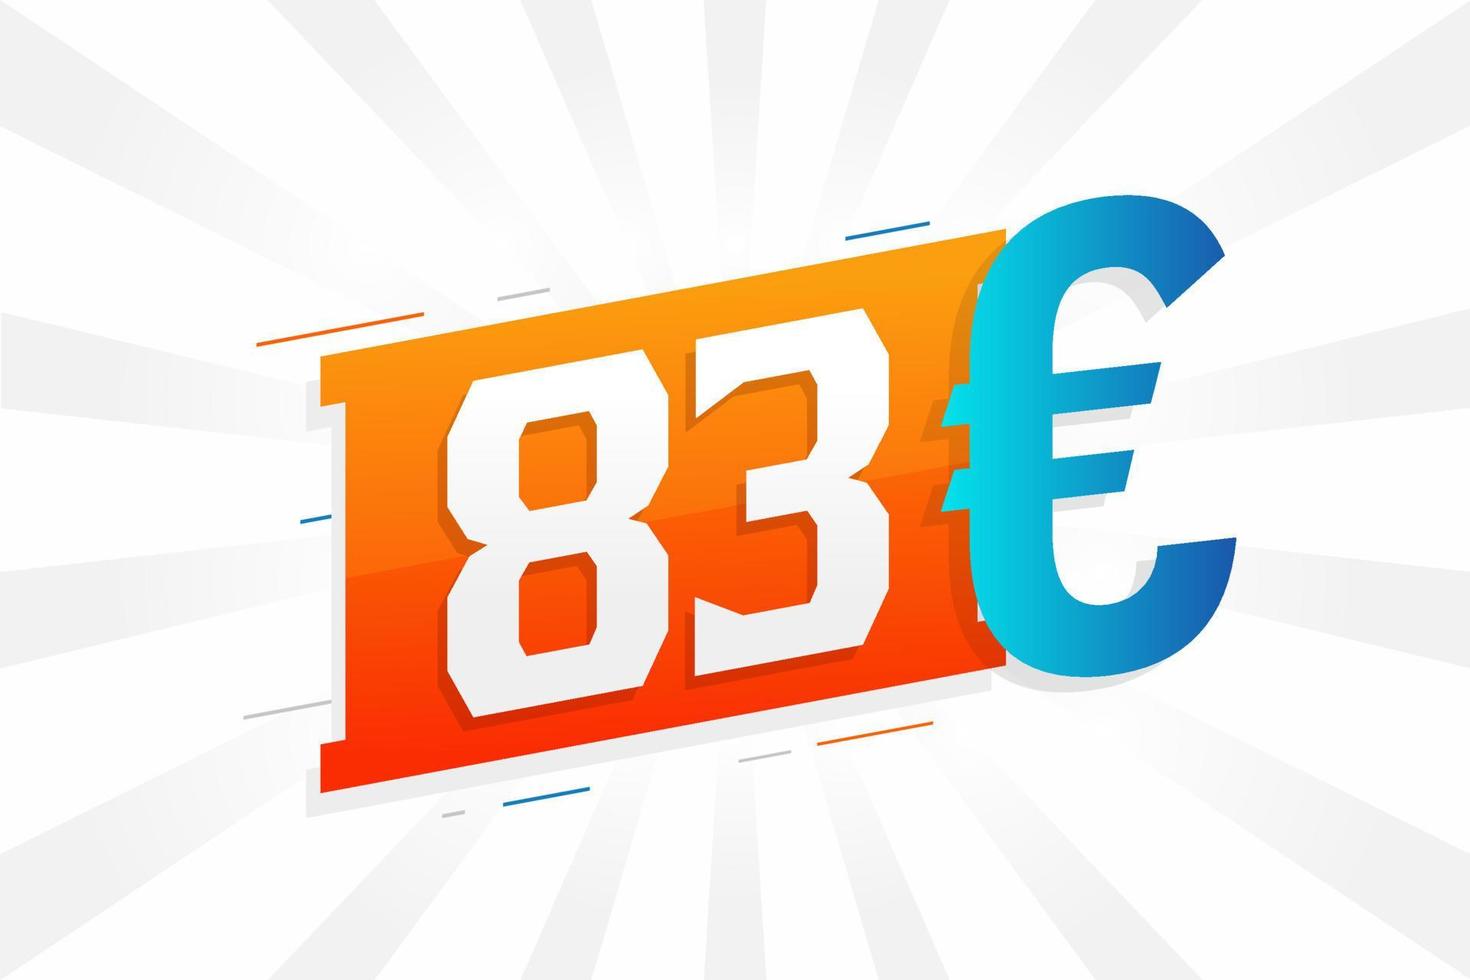 83 euro valuta vector tekst symbool. 83 euro Europese unie geld voorraad vector